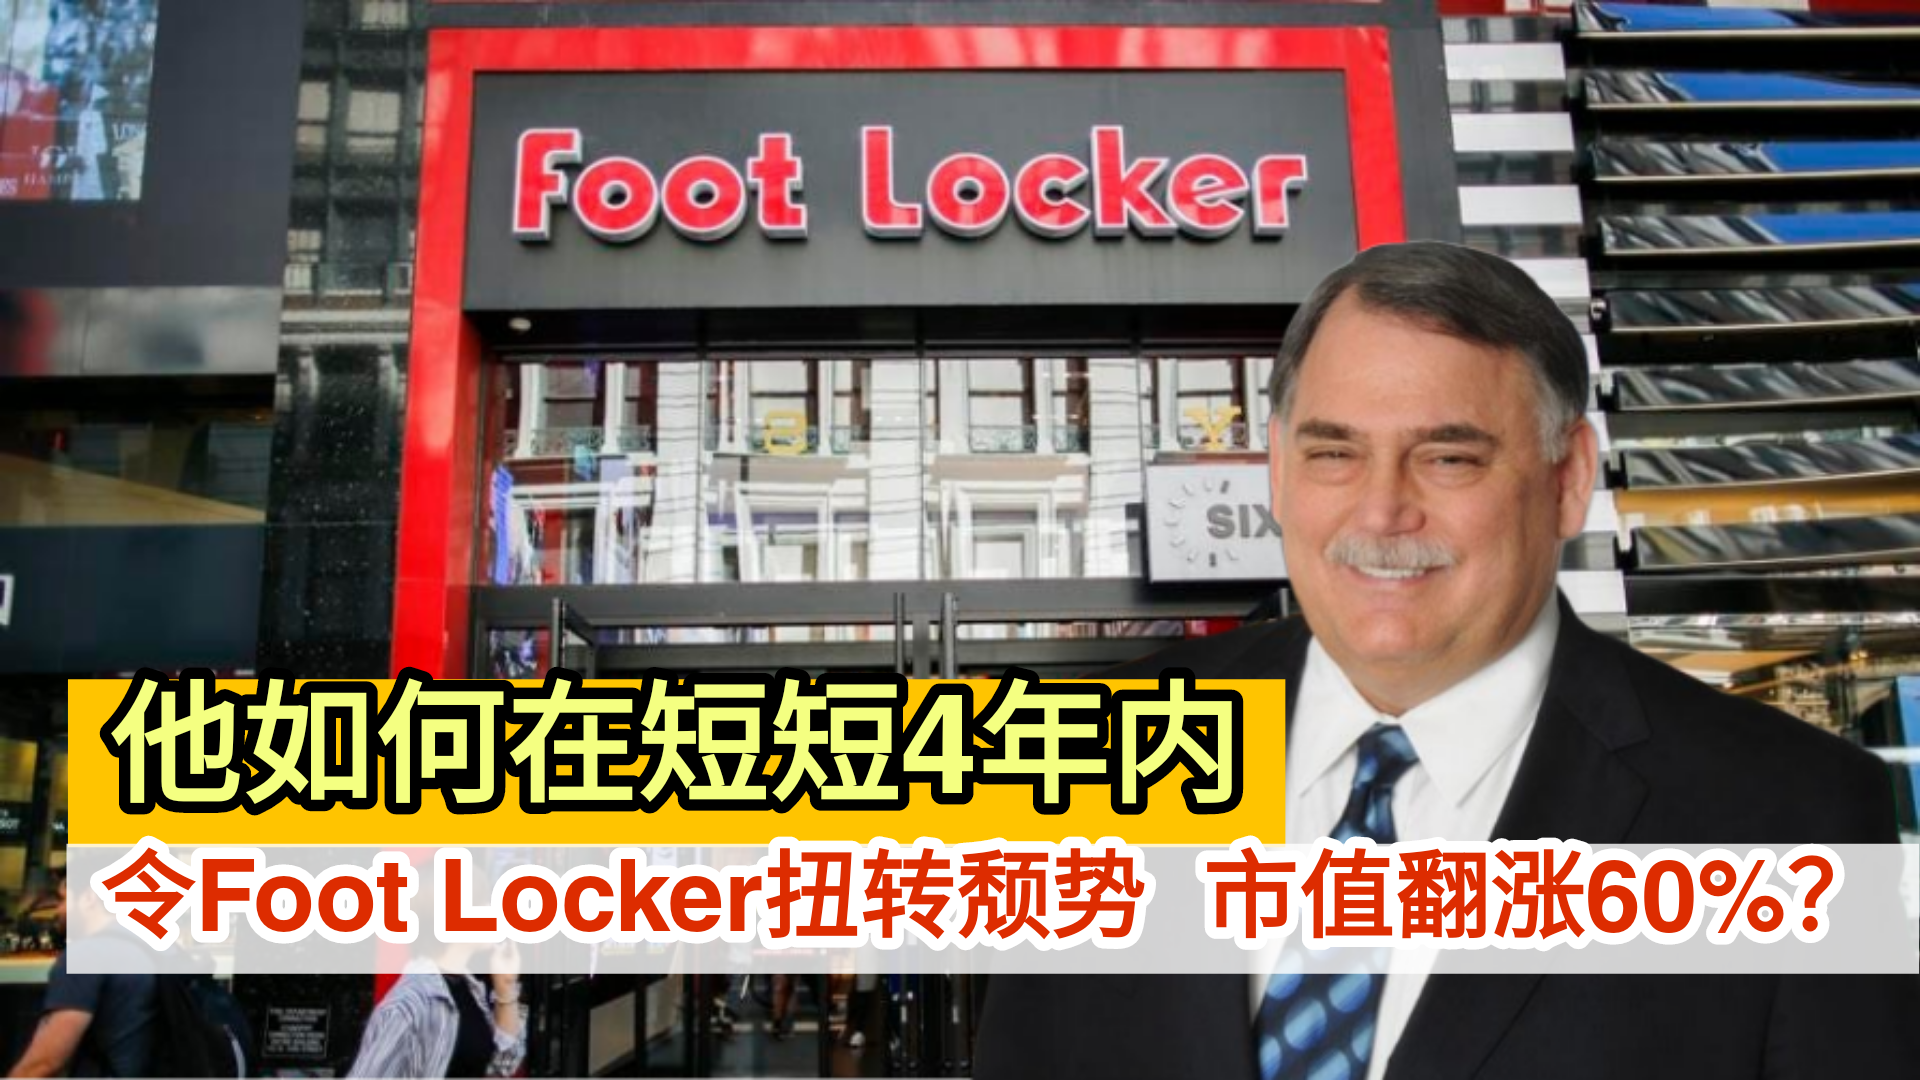 他如何在短短4年内                                                    令Foot Locker扭转颓势  市值翻涨60%？